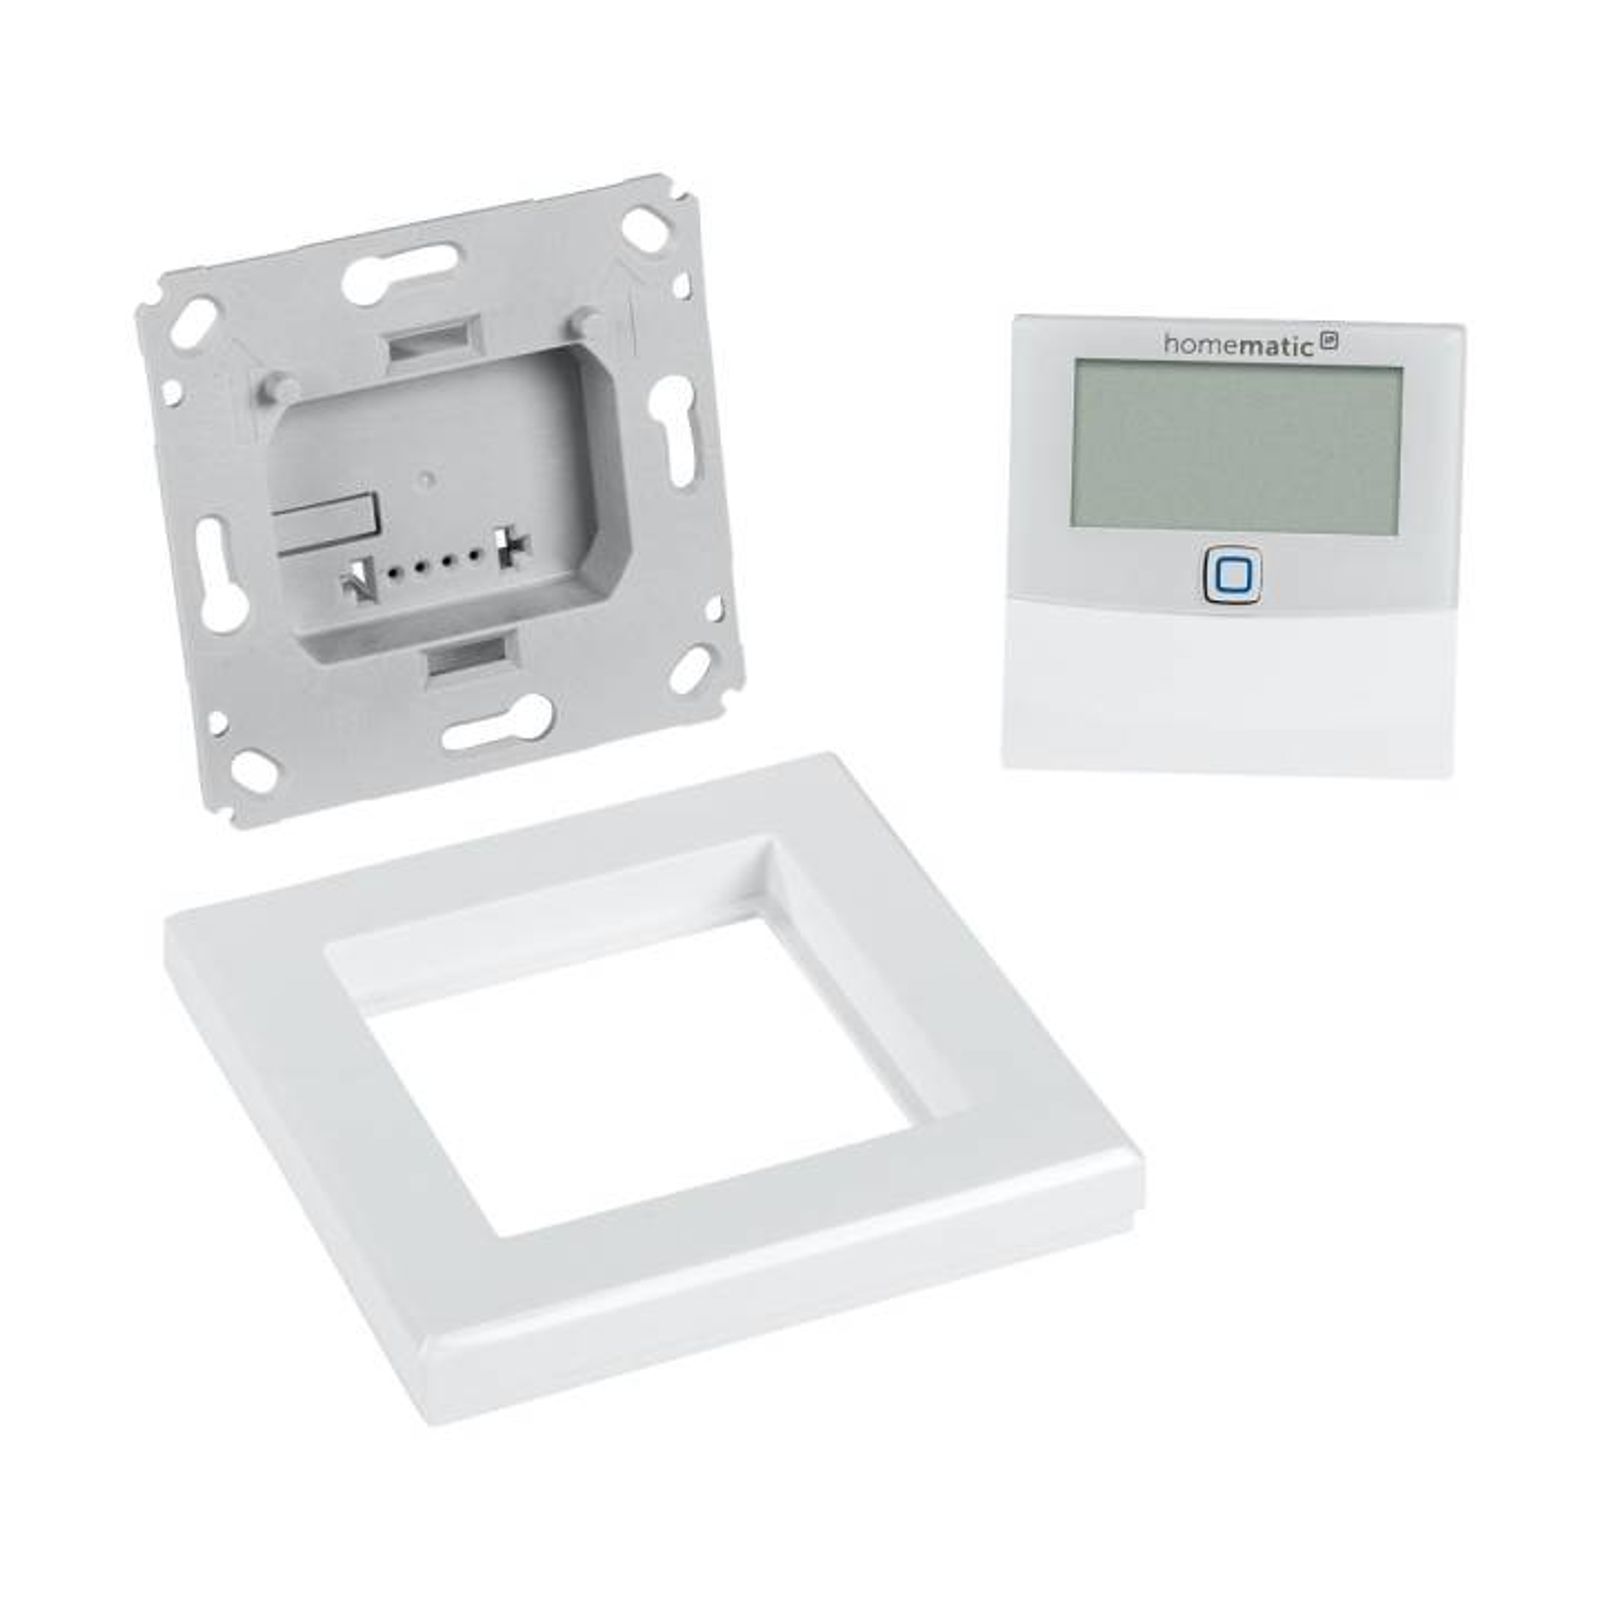 Homematic IP Wired Smart Home Temperatur- und Luftfeuchtigkeitssensor mit Display HmIPW-STHD - innen